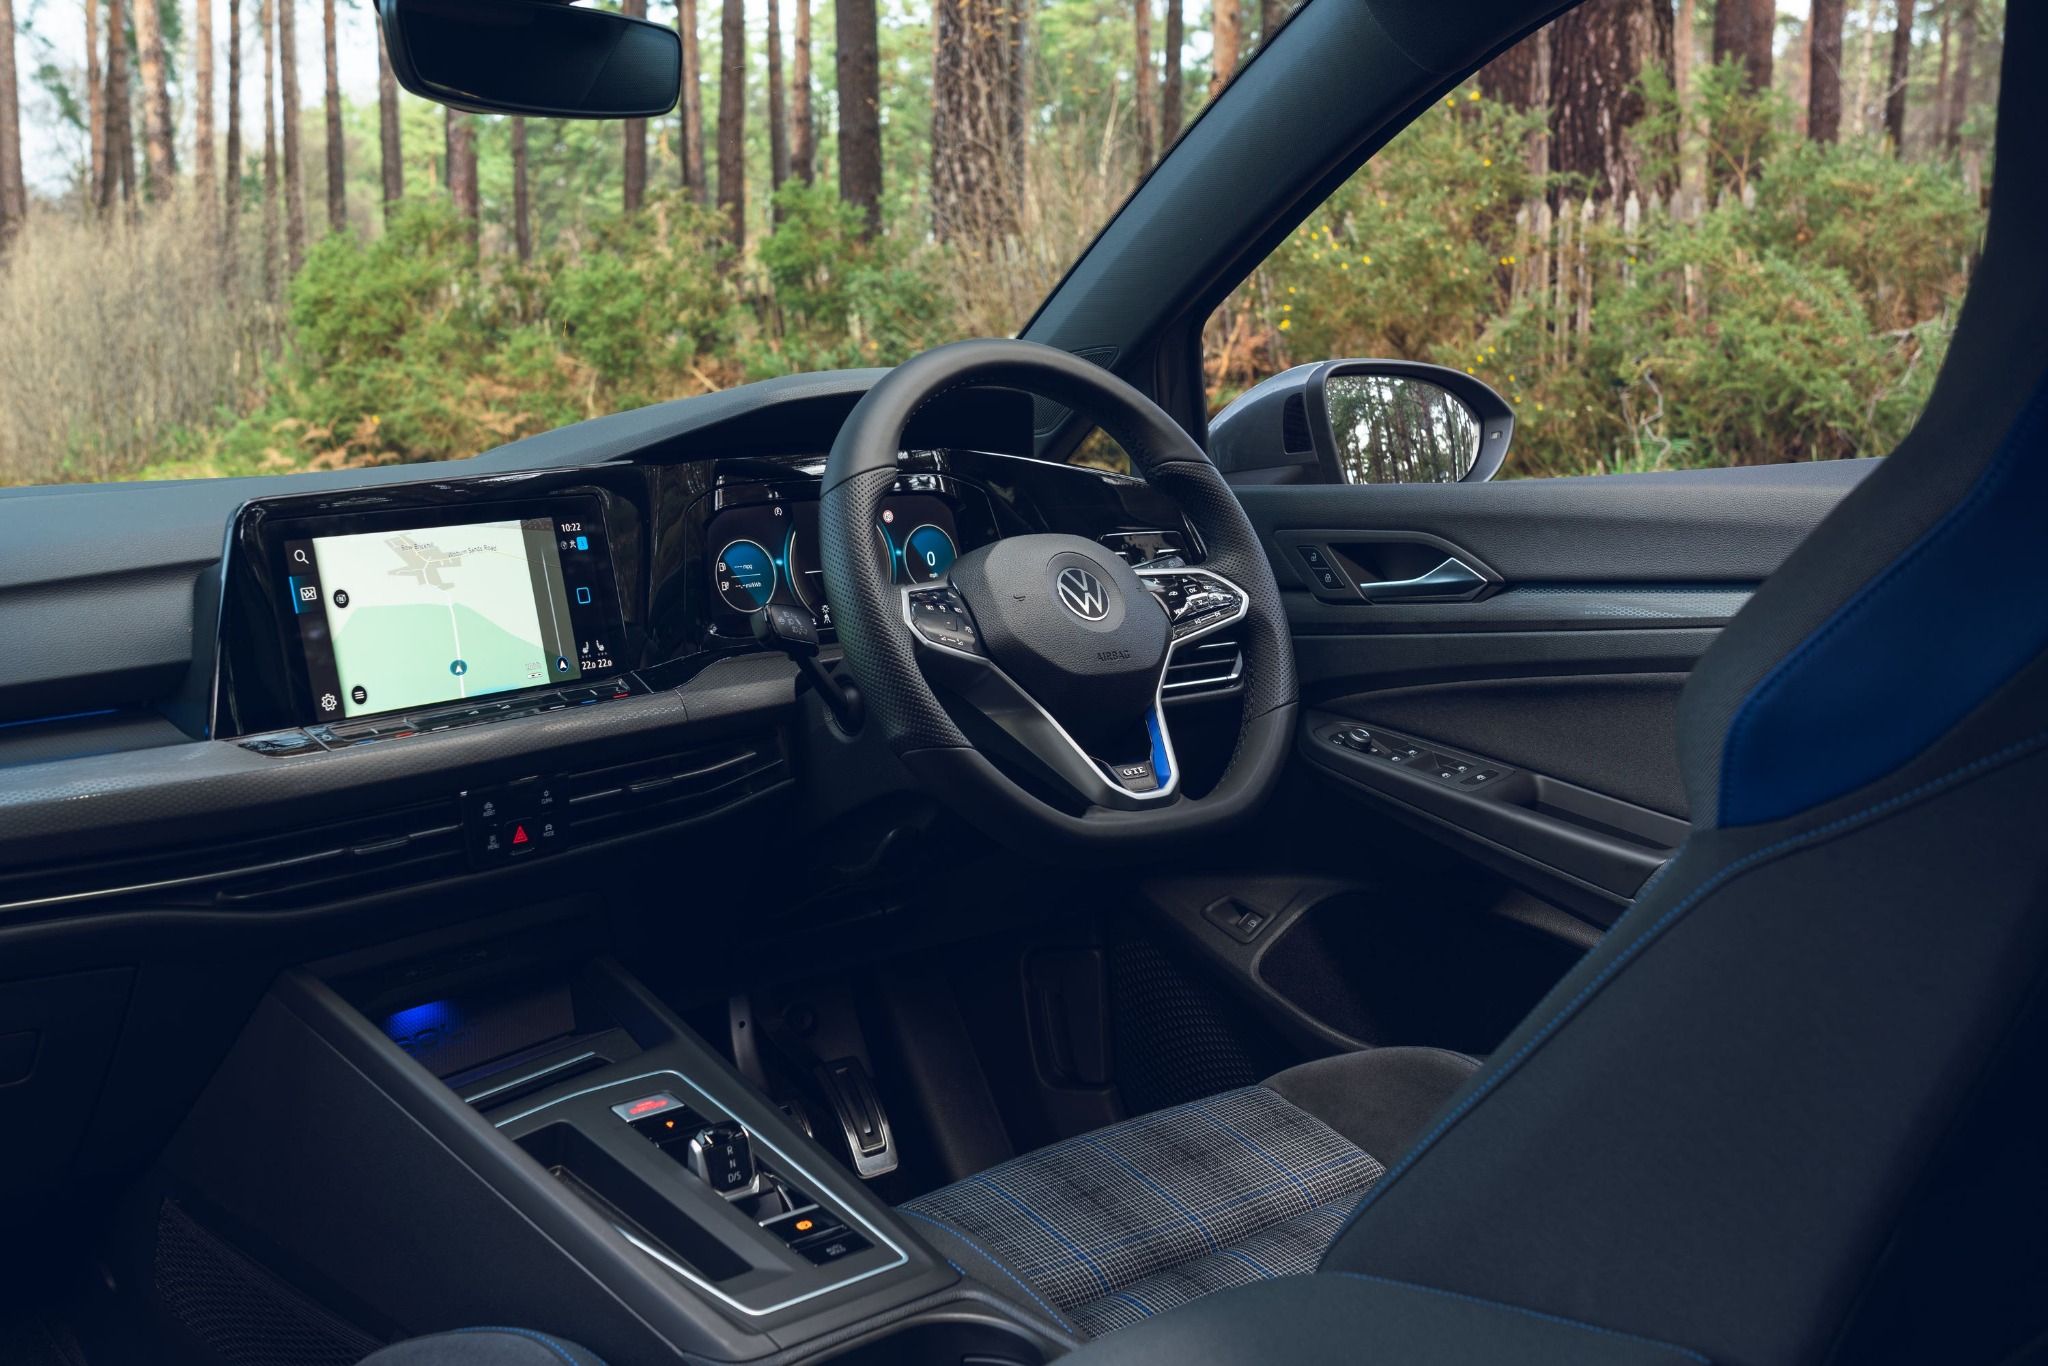 Volkswagen Golf GTE Interior